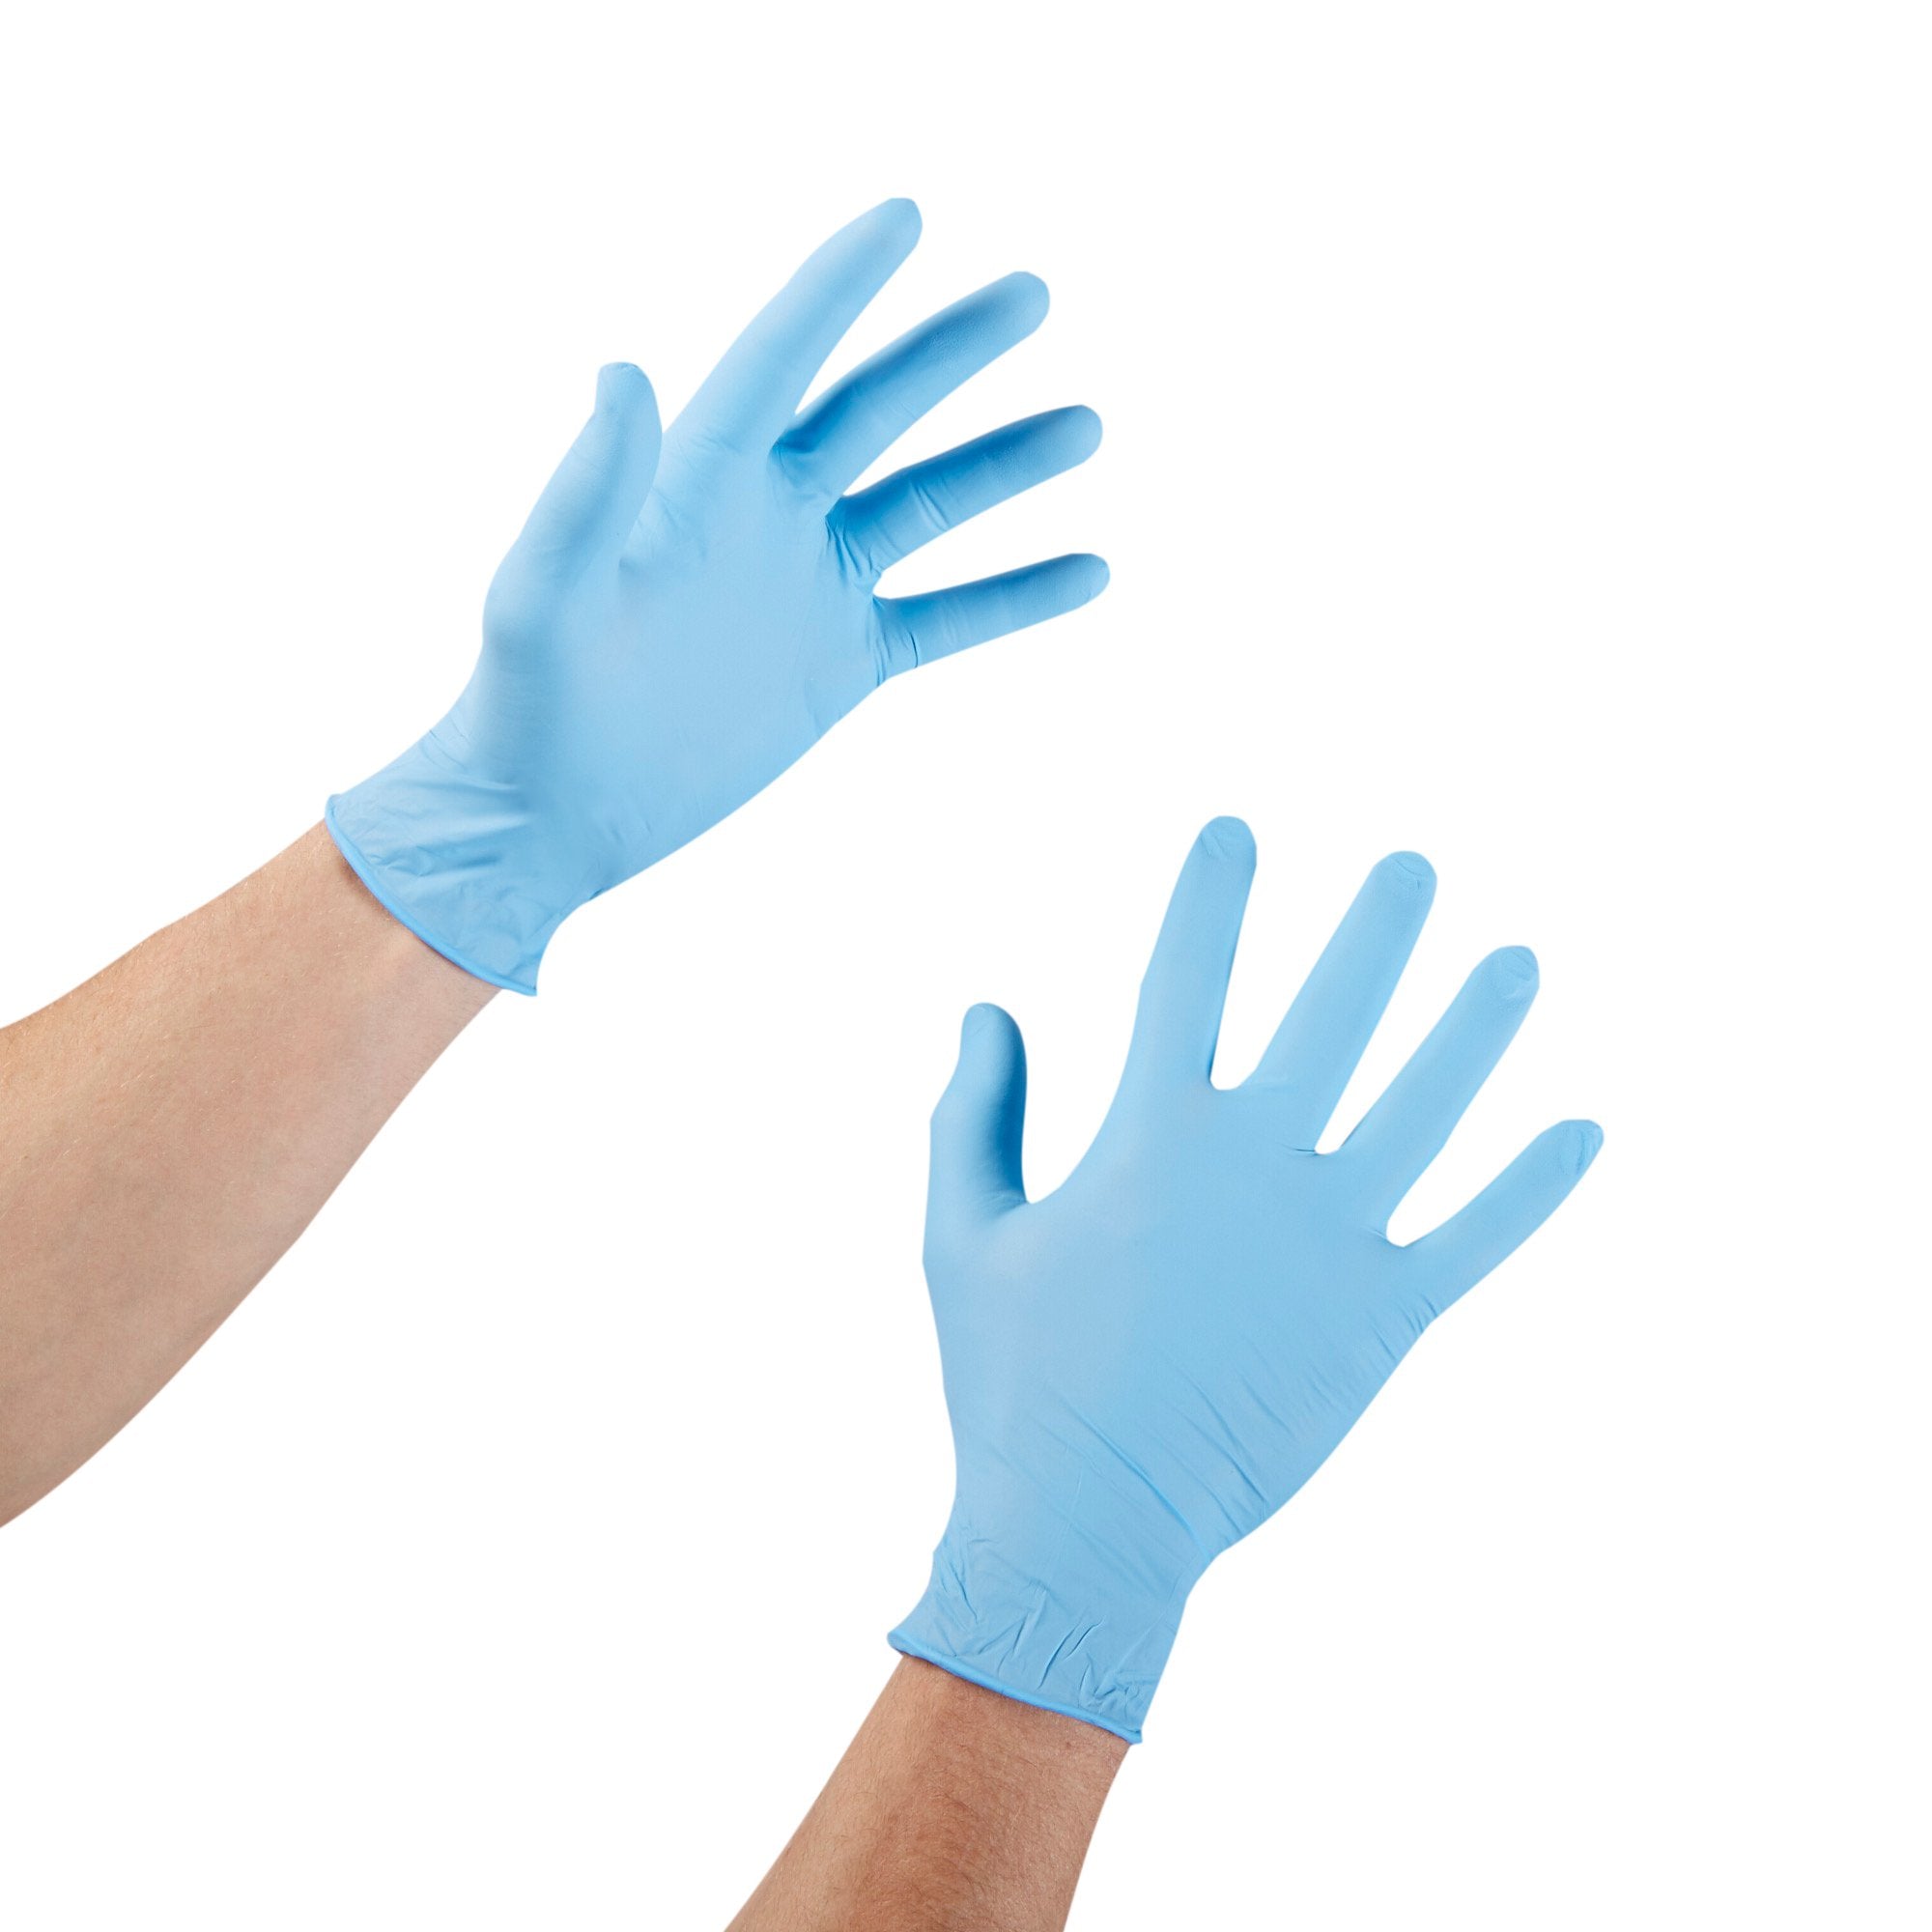 McKesson Confiderm 4.5C Nitrile Exam Gloves, Medium, Blue - 1000 Pack